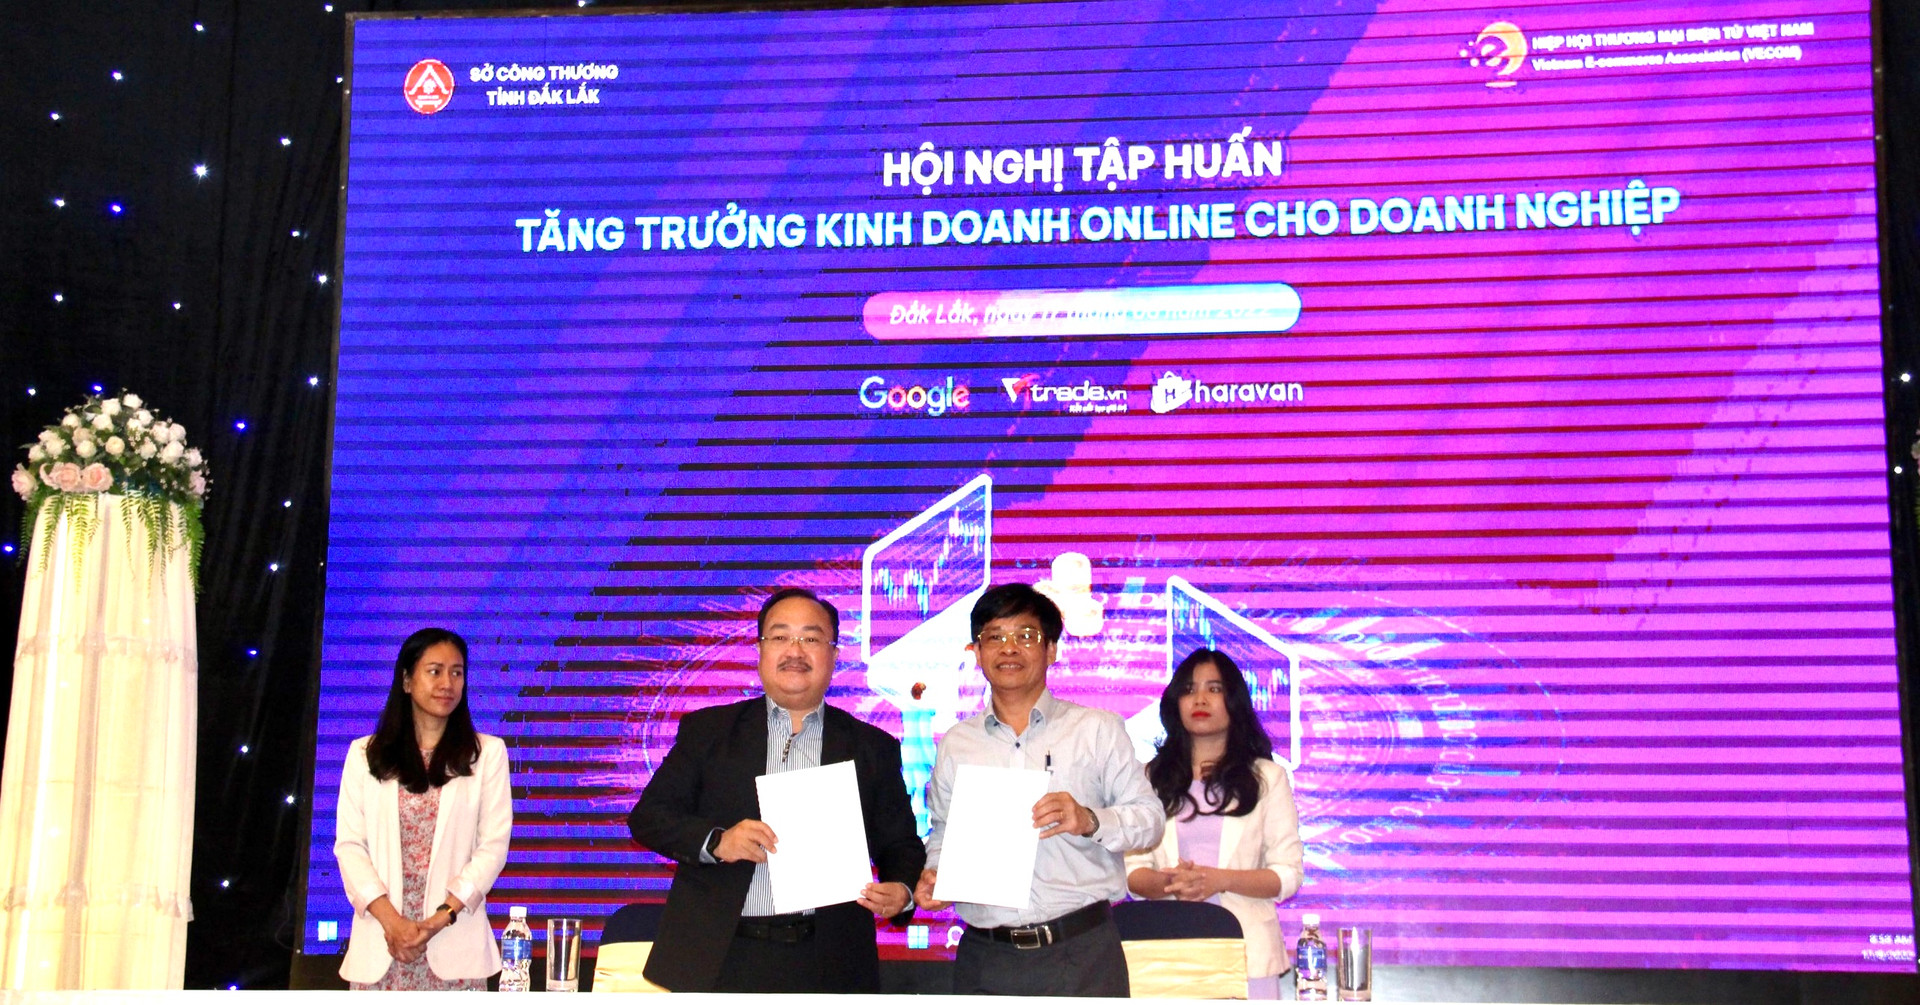 Sở Công Thương Đắk Lắk và Hiệp hội Thương mại điện tử Việt Nam ký kết hợp tác trong lĩnh vực thương mại điện tử giai đoạn 2022 - 2025.